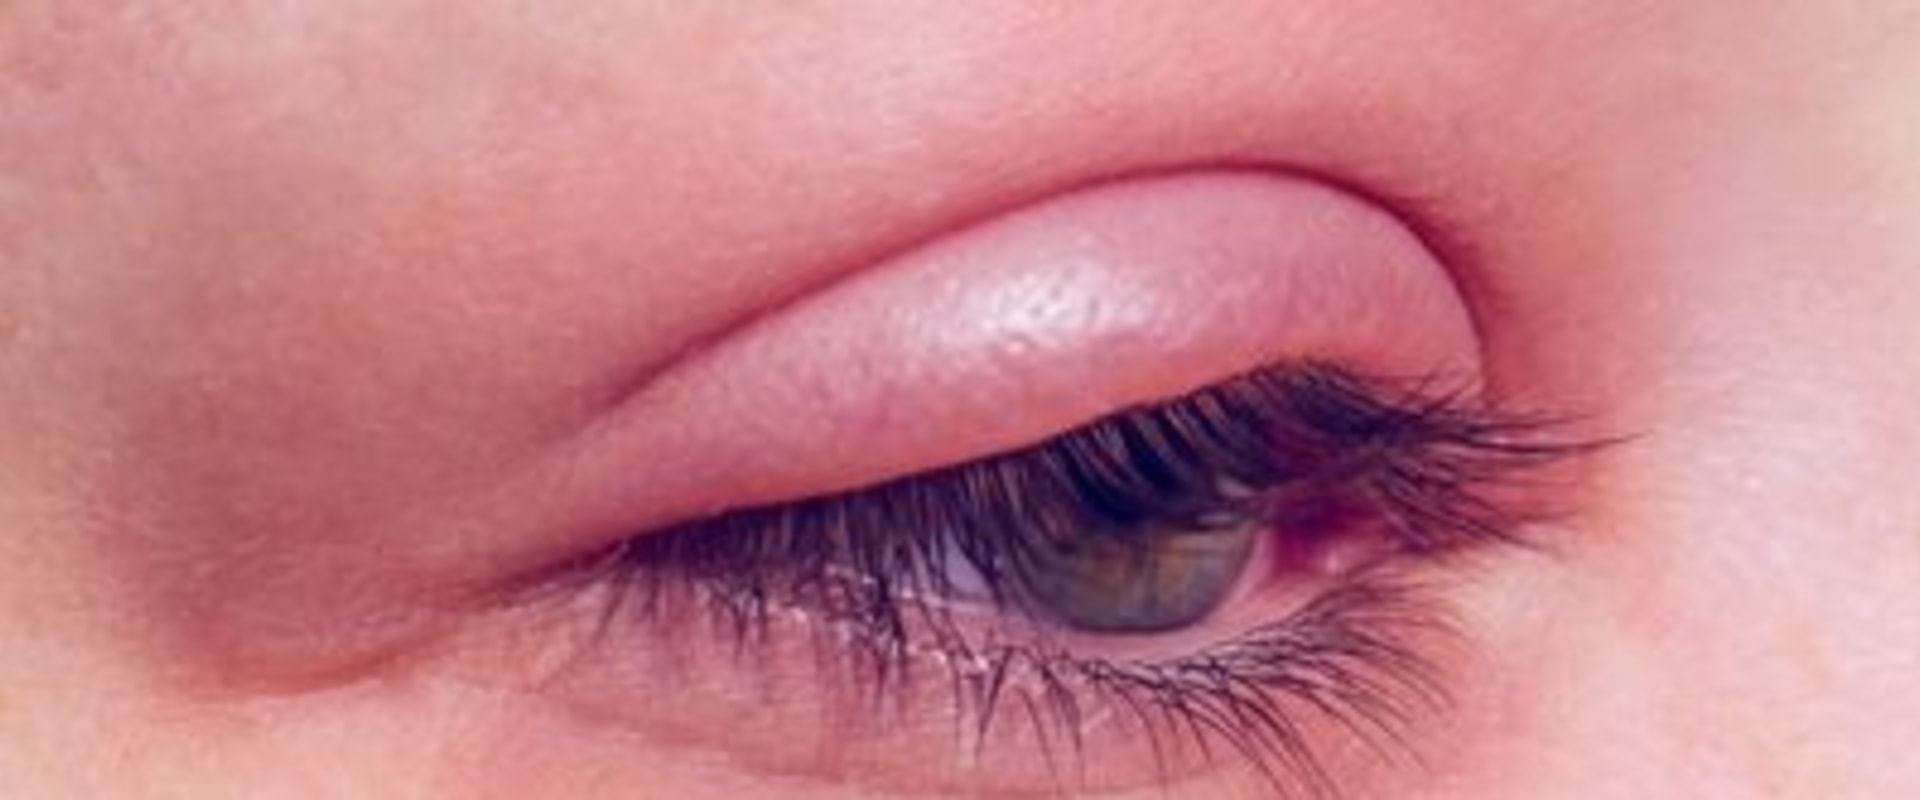 How toxic is eyelash glue?